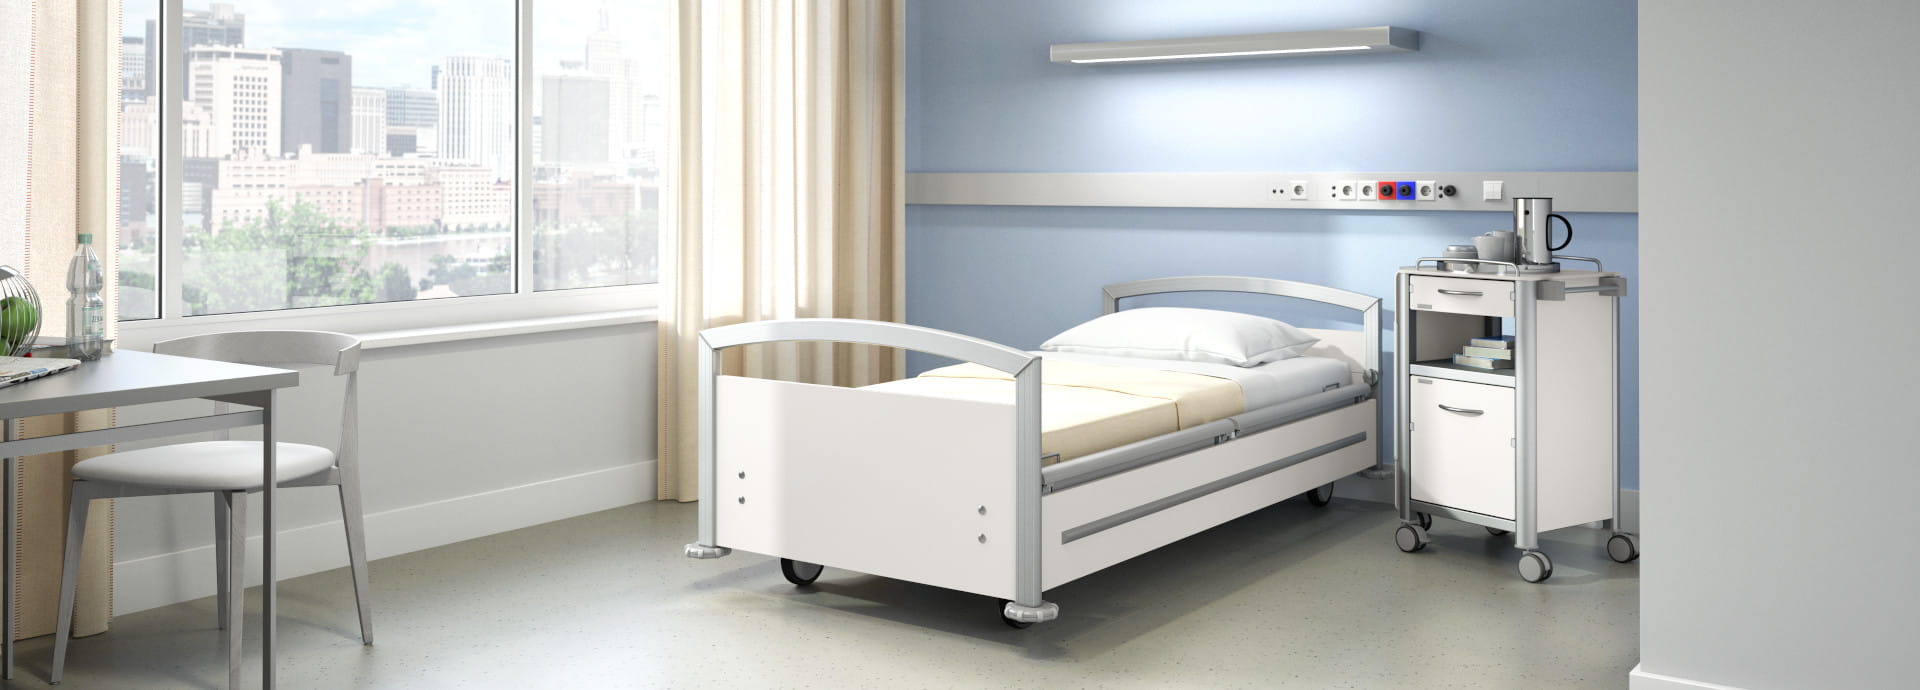 Mehr als ein Krankenhausbett: Niedriges Krankenhausbett + gemütliches Design = hospitel